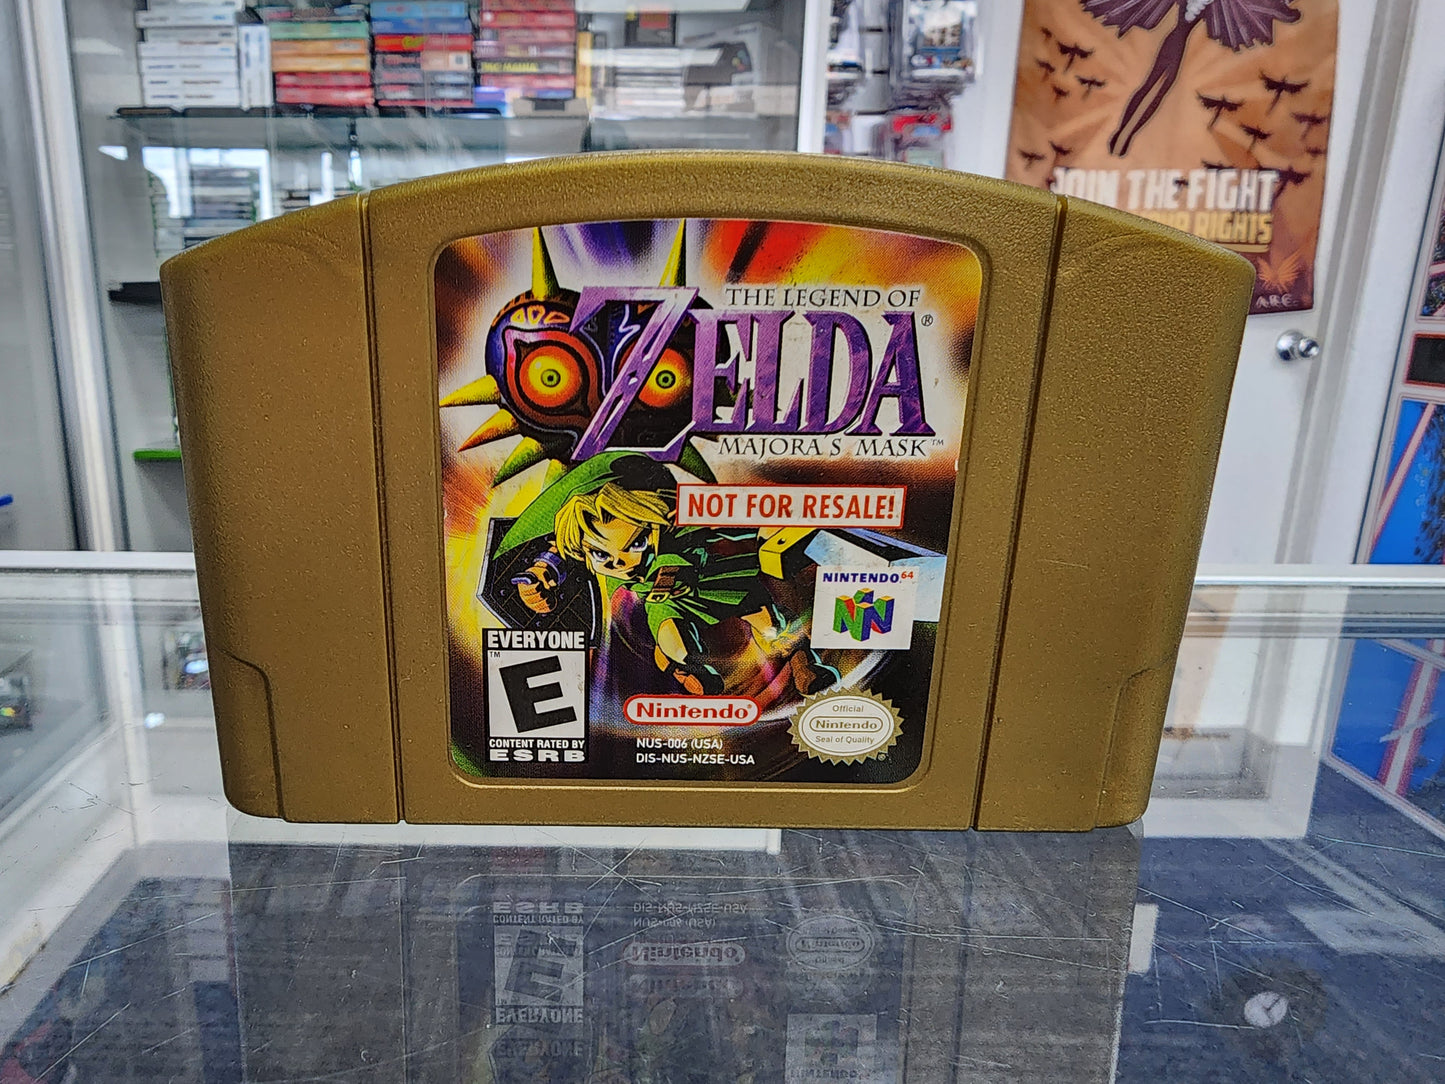 The Legend of Zelda: Majora's Mask [Not For Resale Variant] (Nintendo 64)